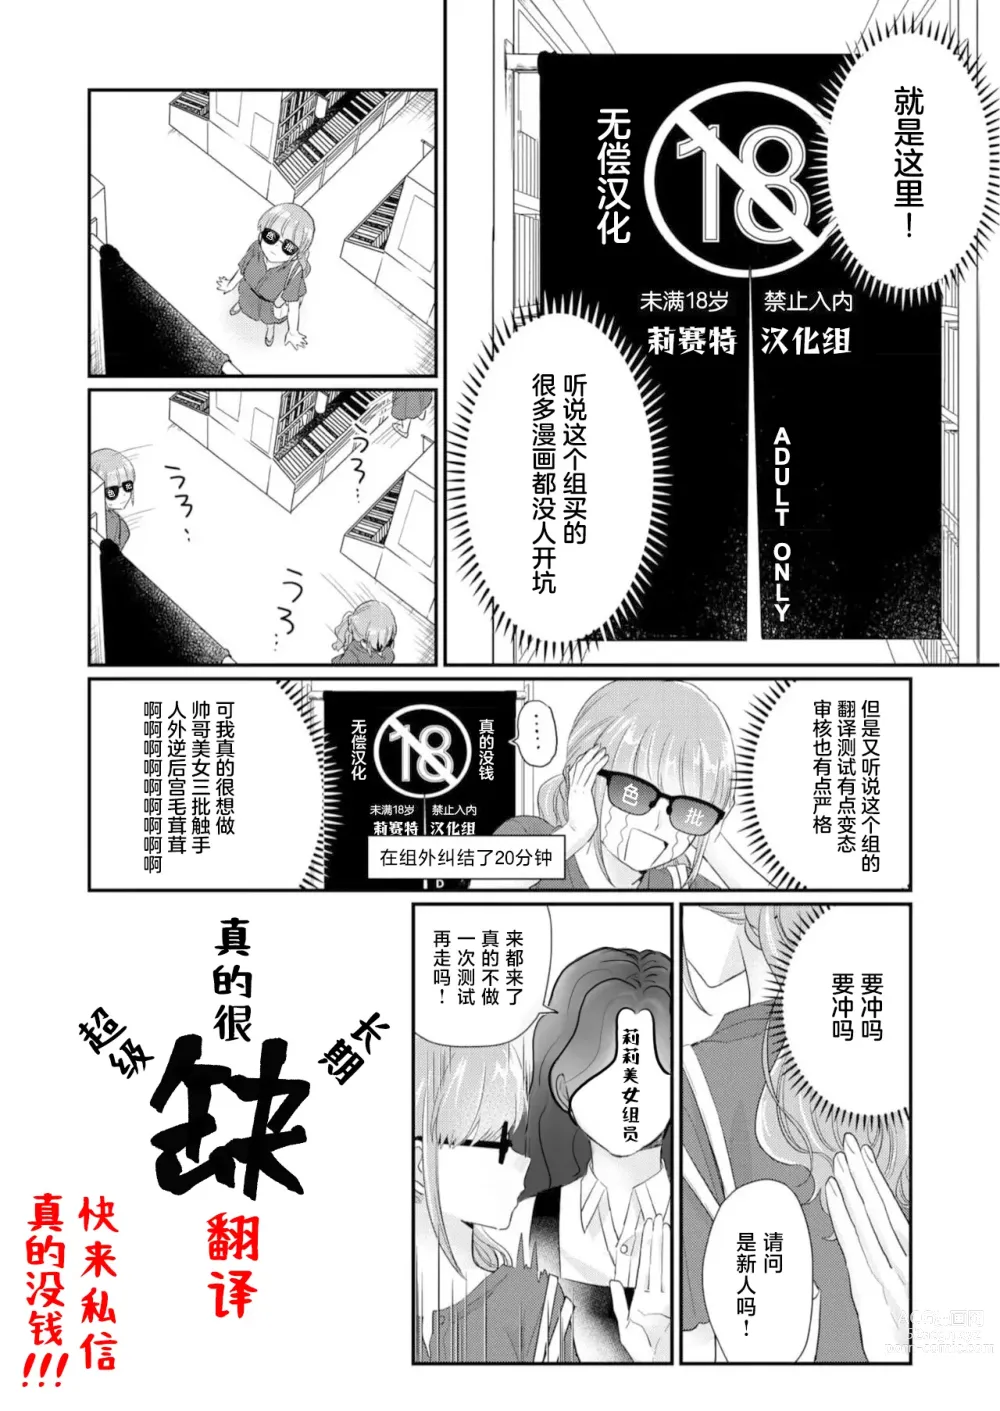 Page 31 of manga 白蛇大人的溺爱试验~苦命OL在异世界缔结了淫荡契约…~